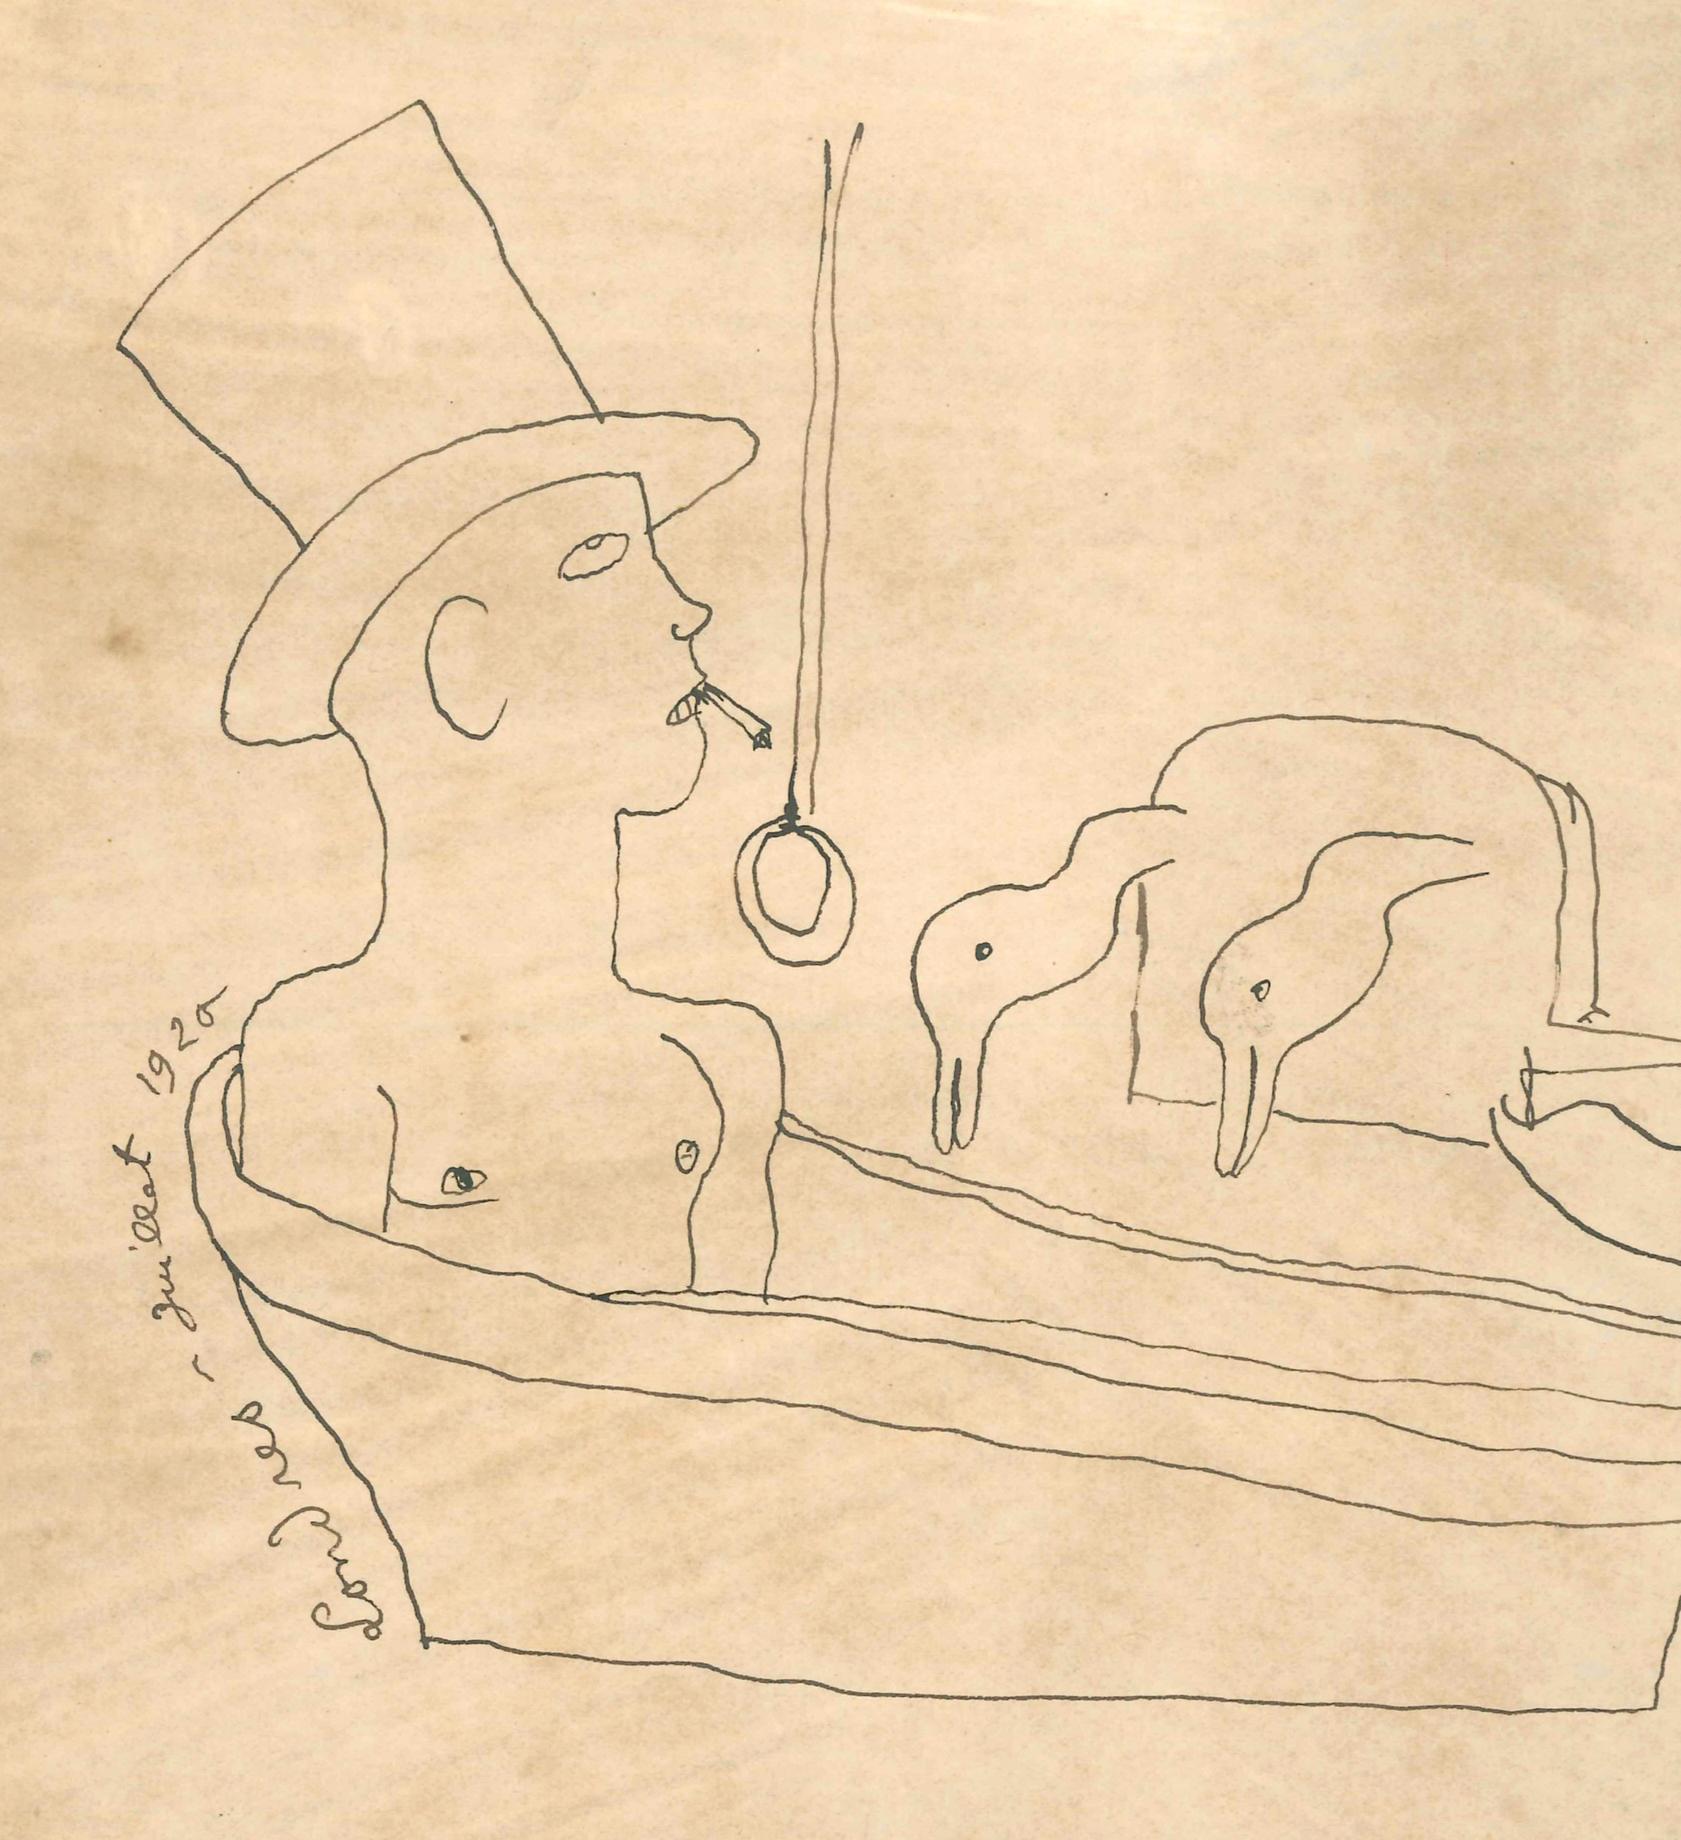 Londres - Drawing original à l'encre de Chine de J. Cocteau - 1920 - Art de Jean Cocteau